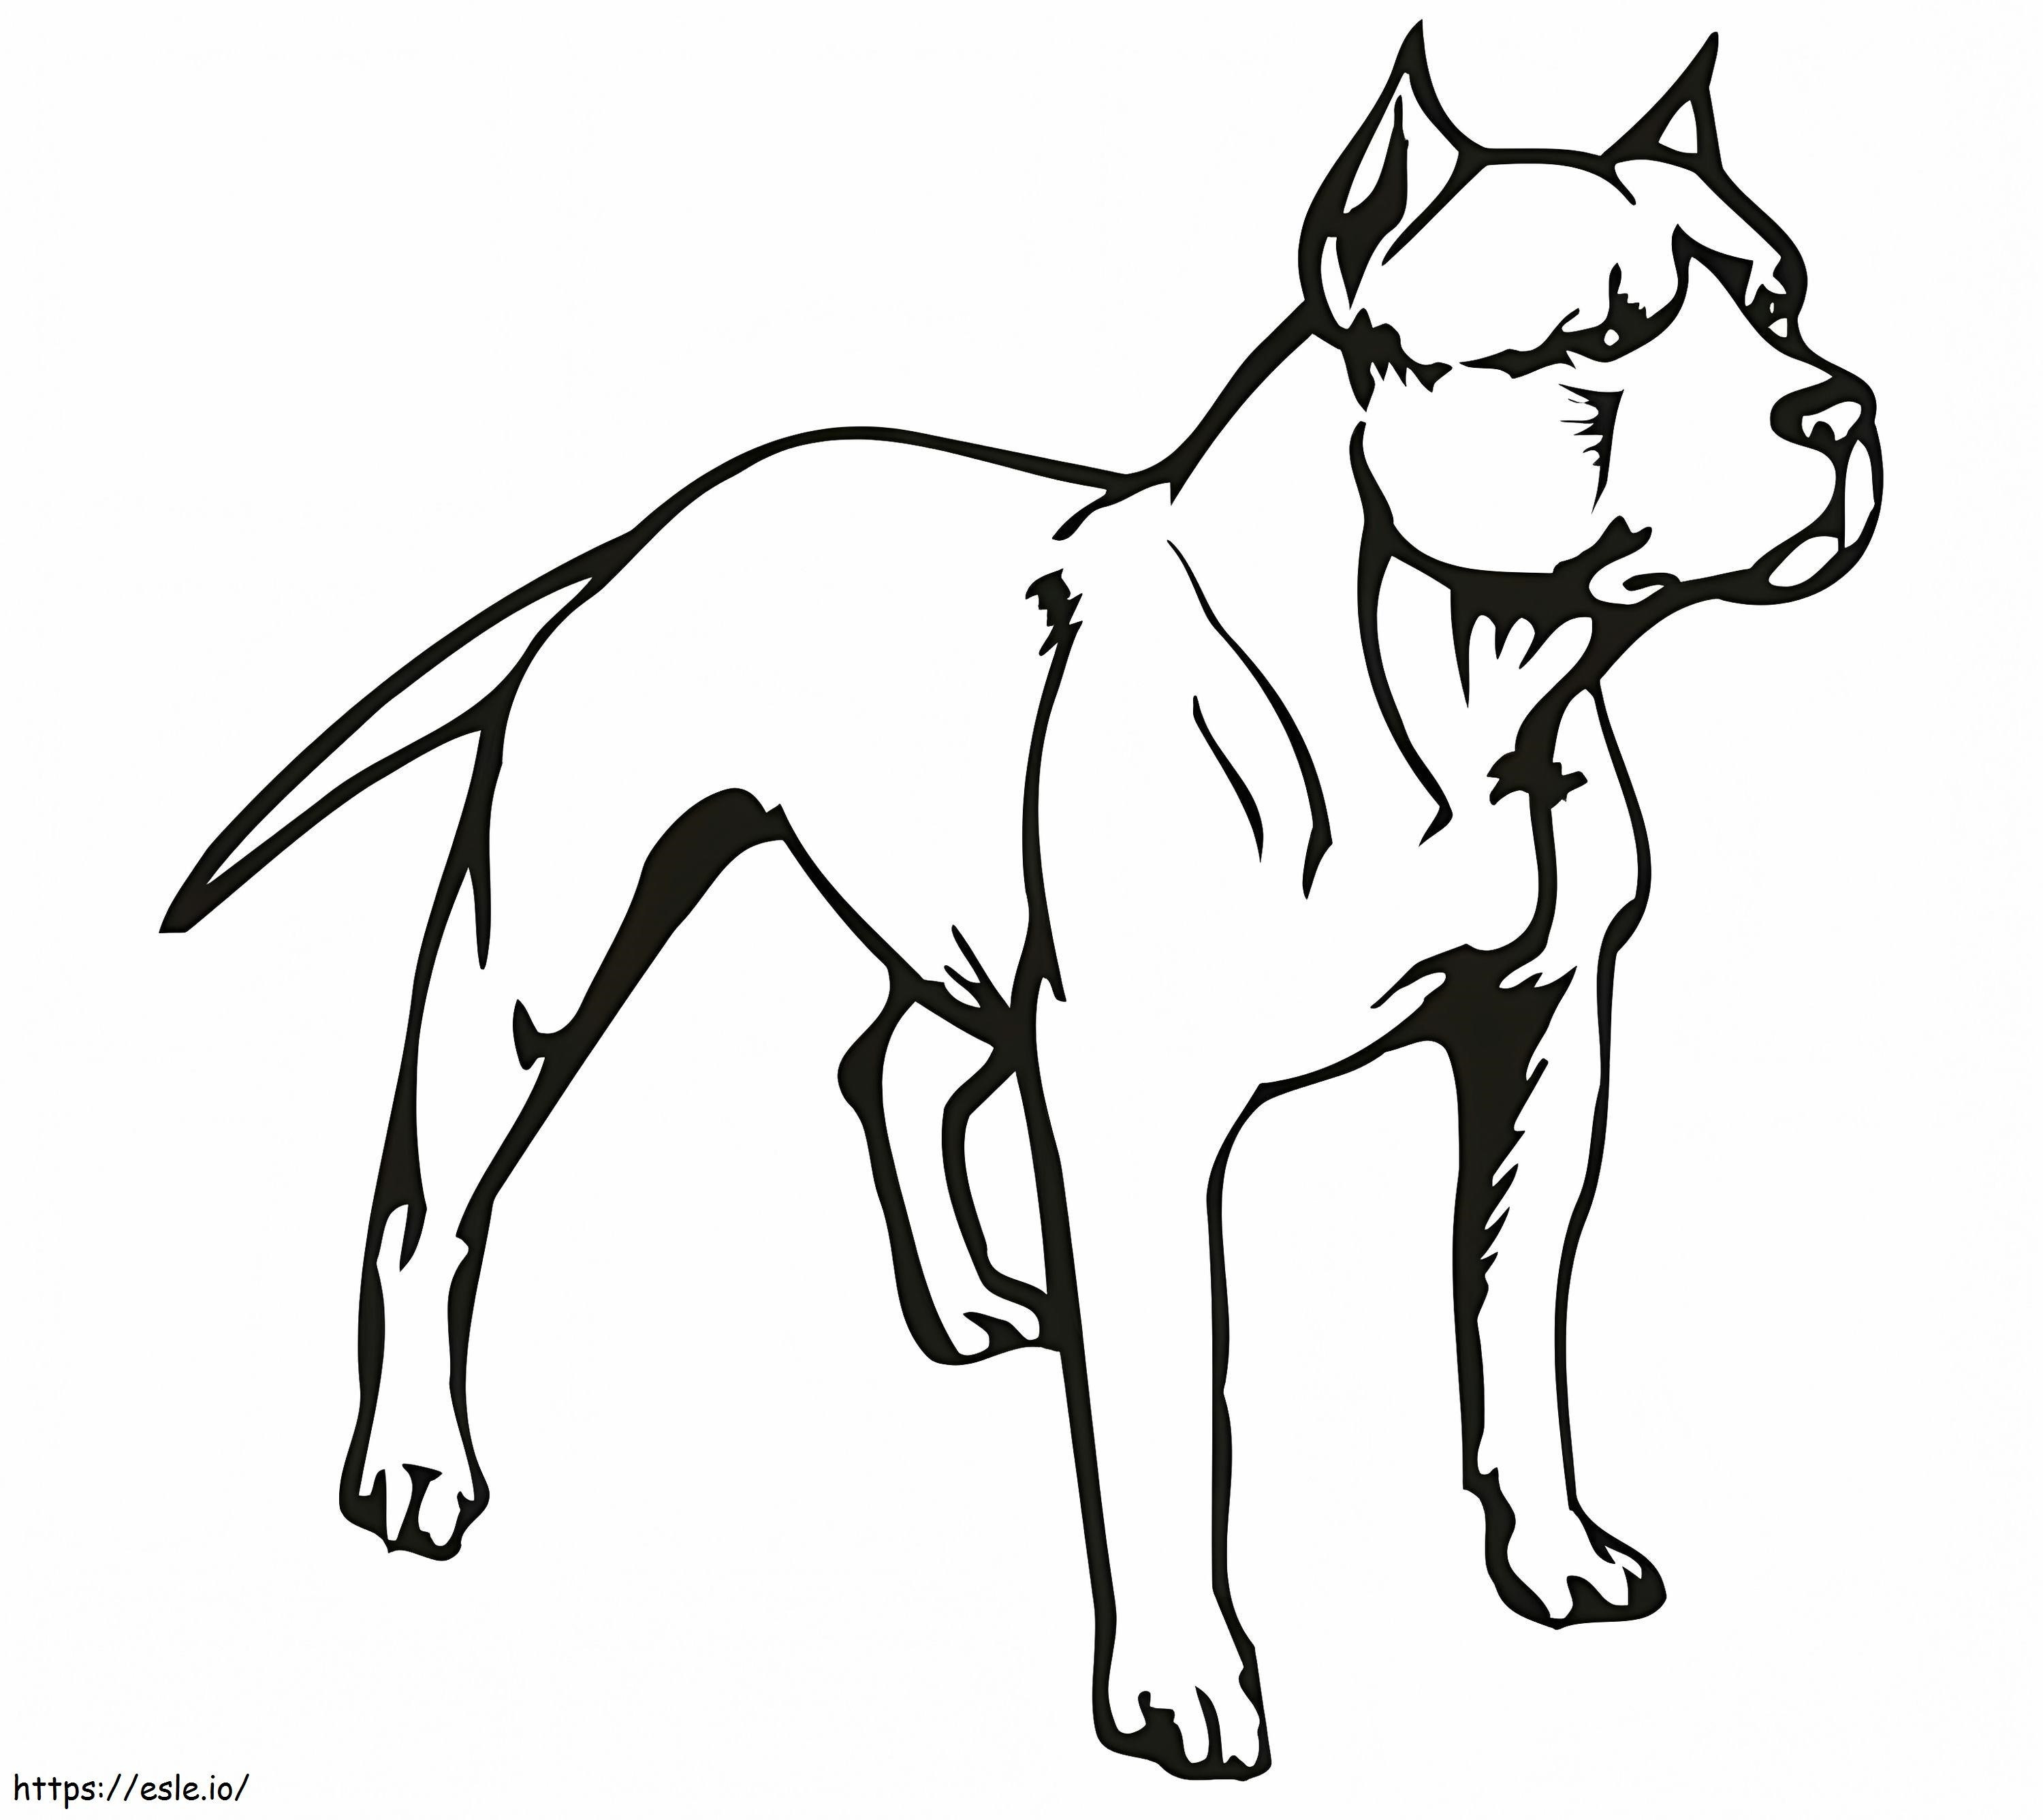 Pitbull Dog coloring page